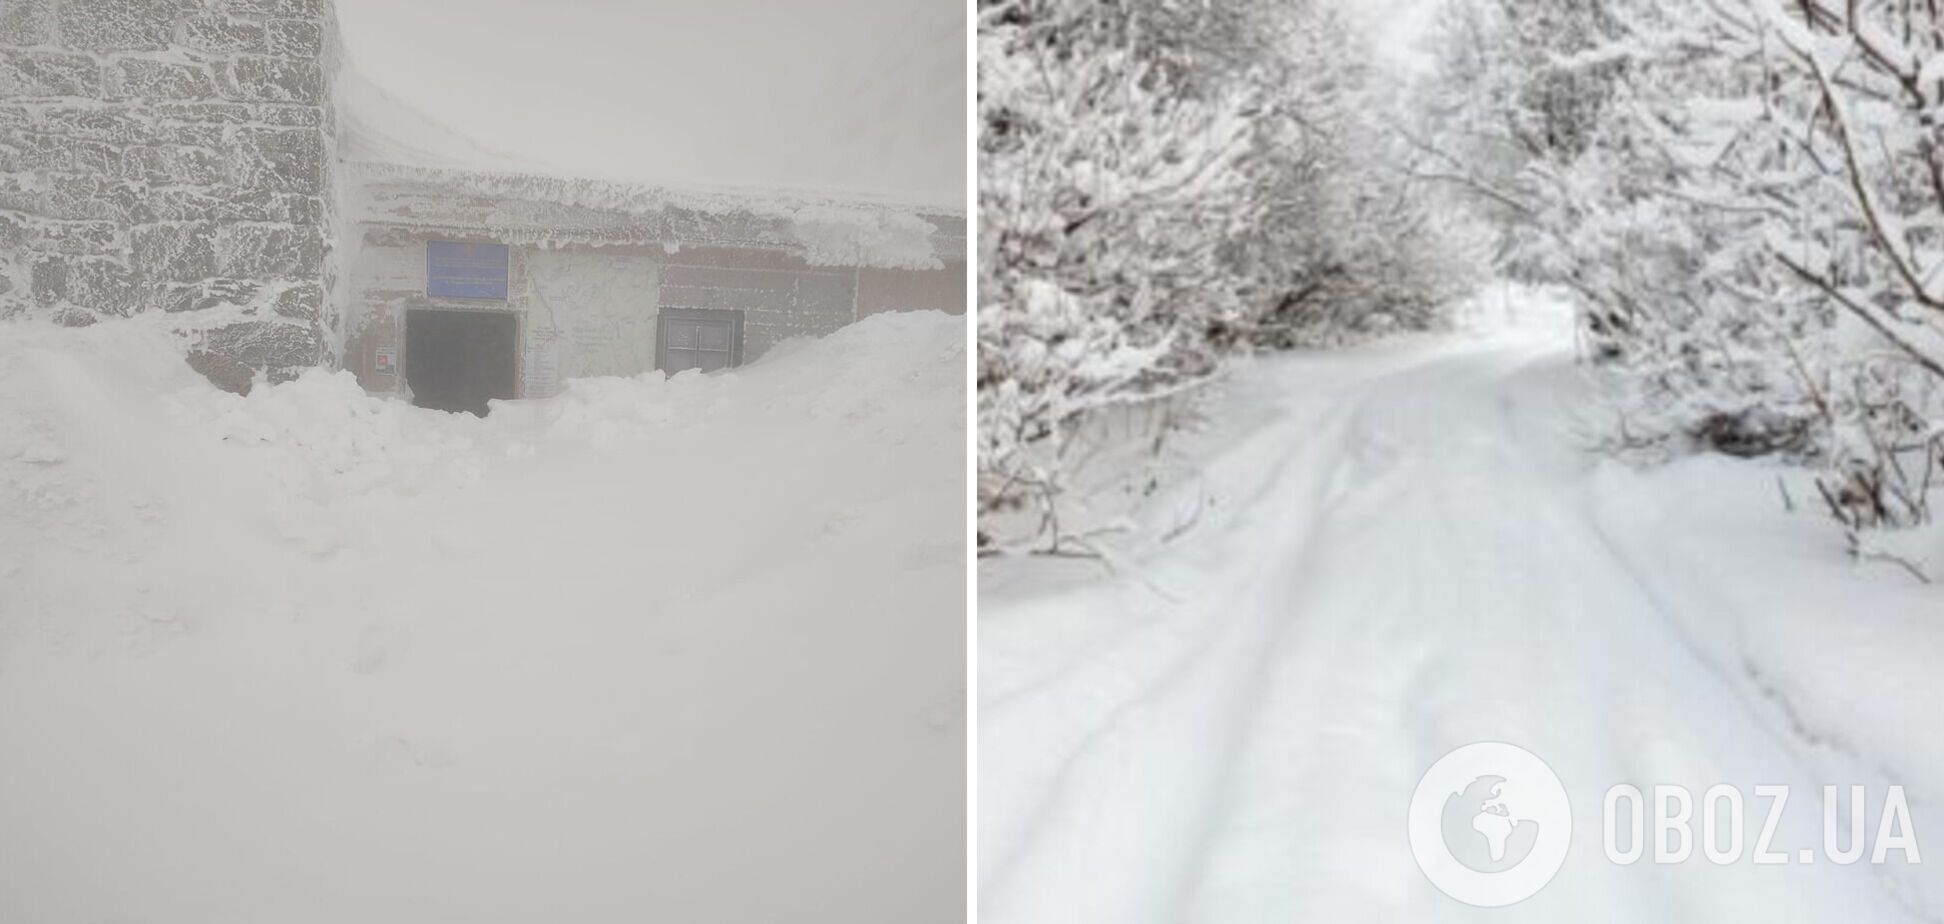 Украинские Карпаты засыпало снегом